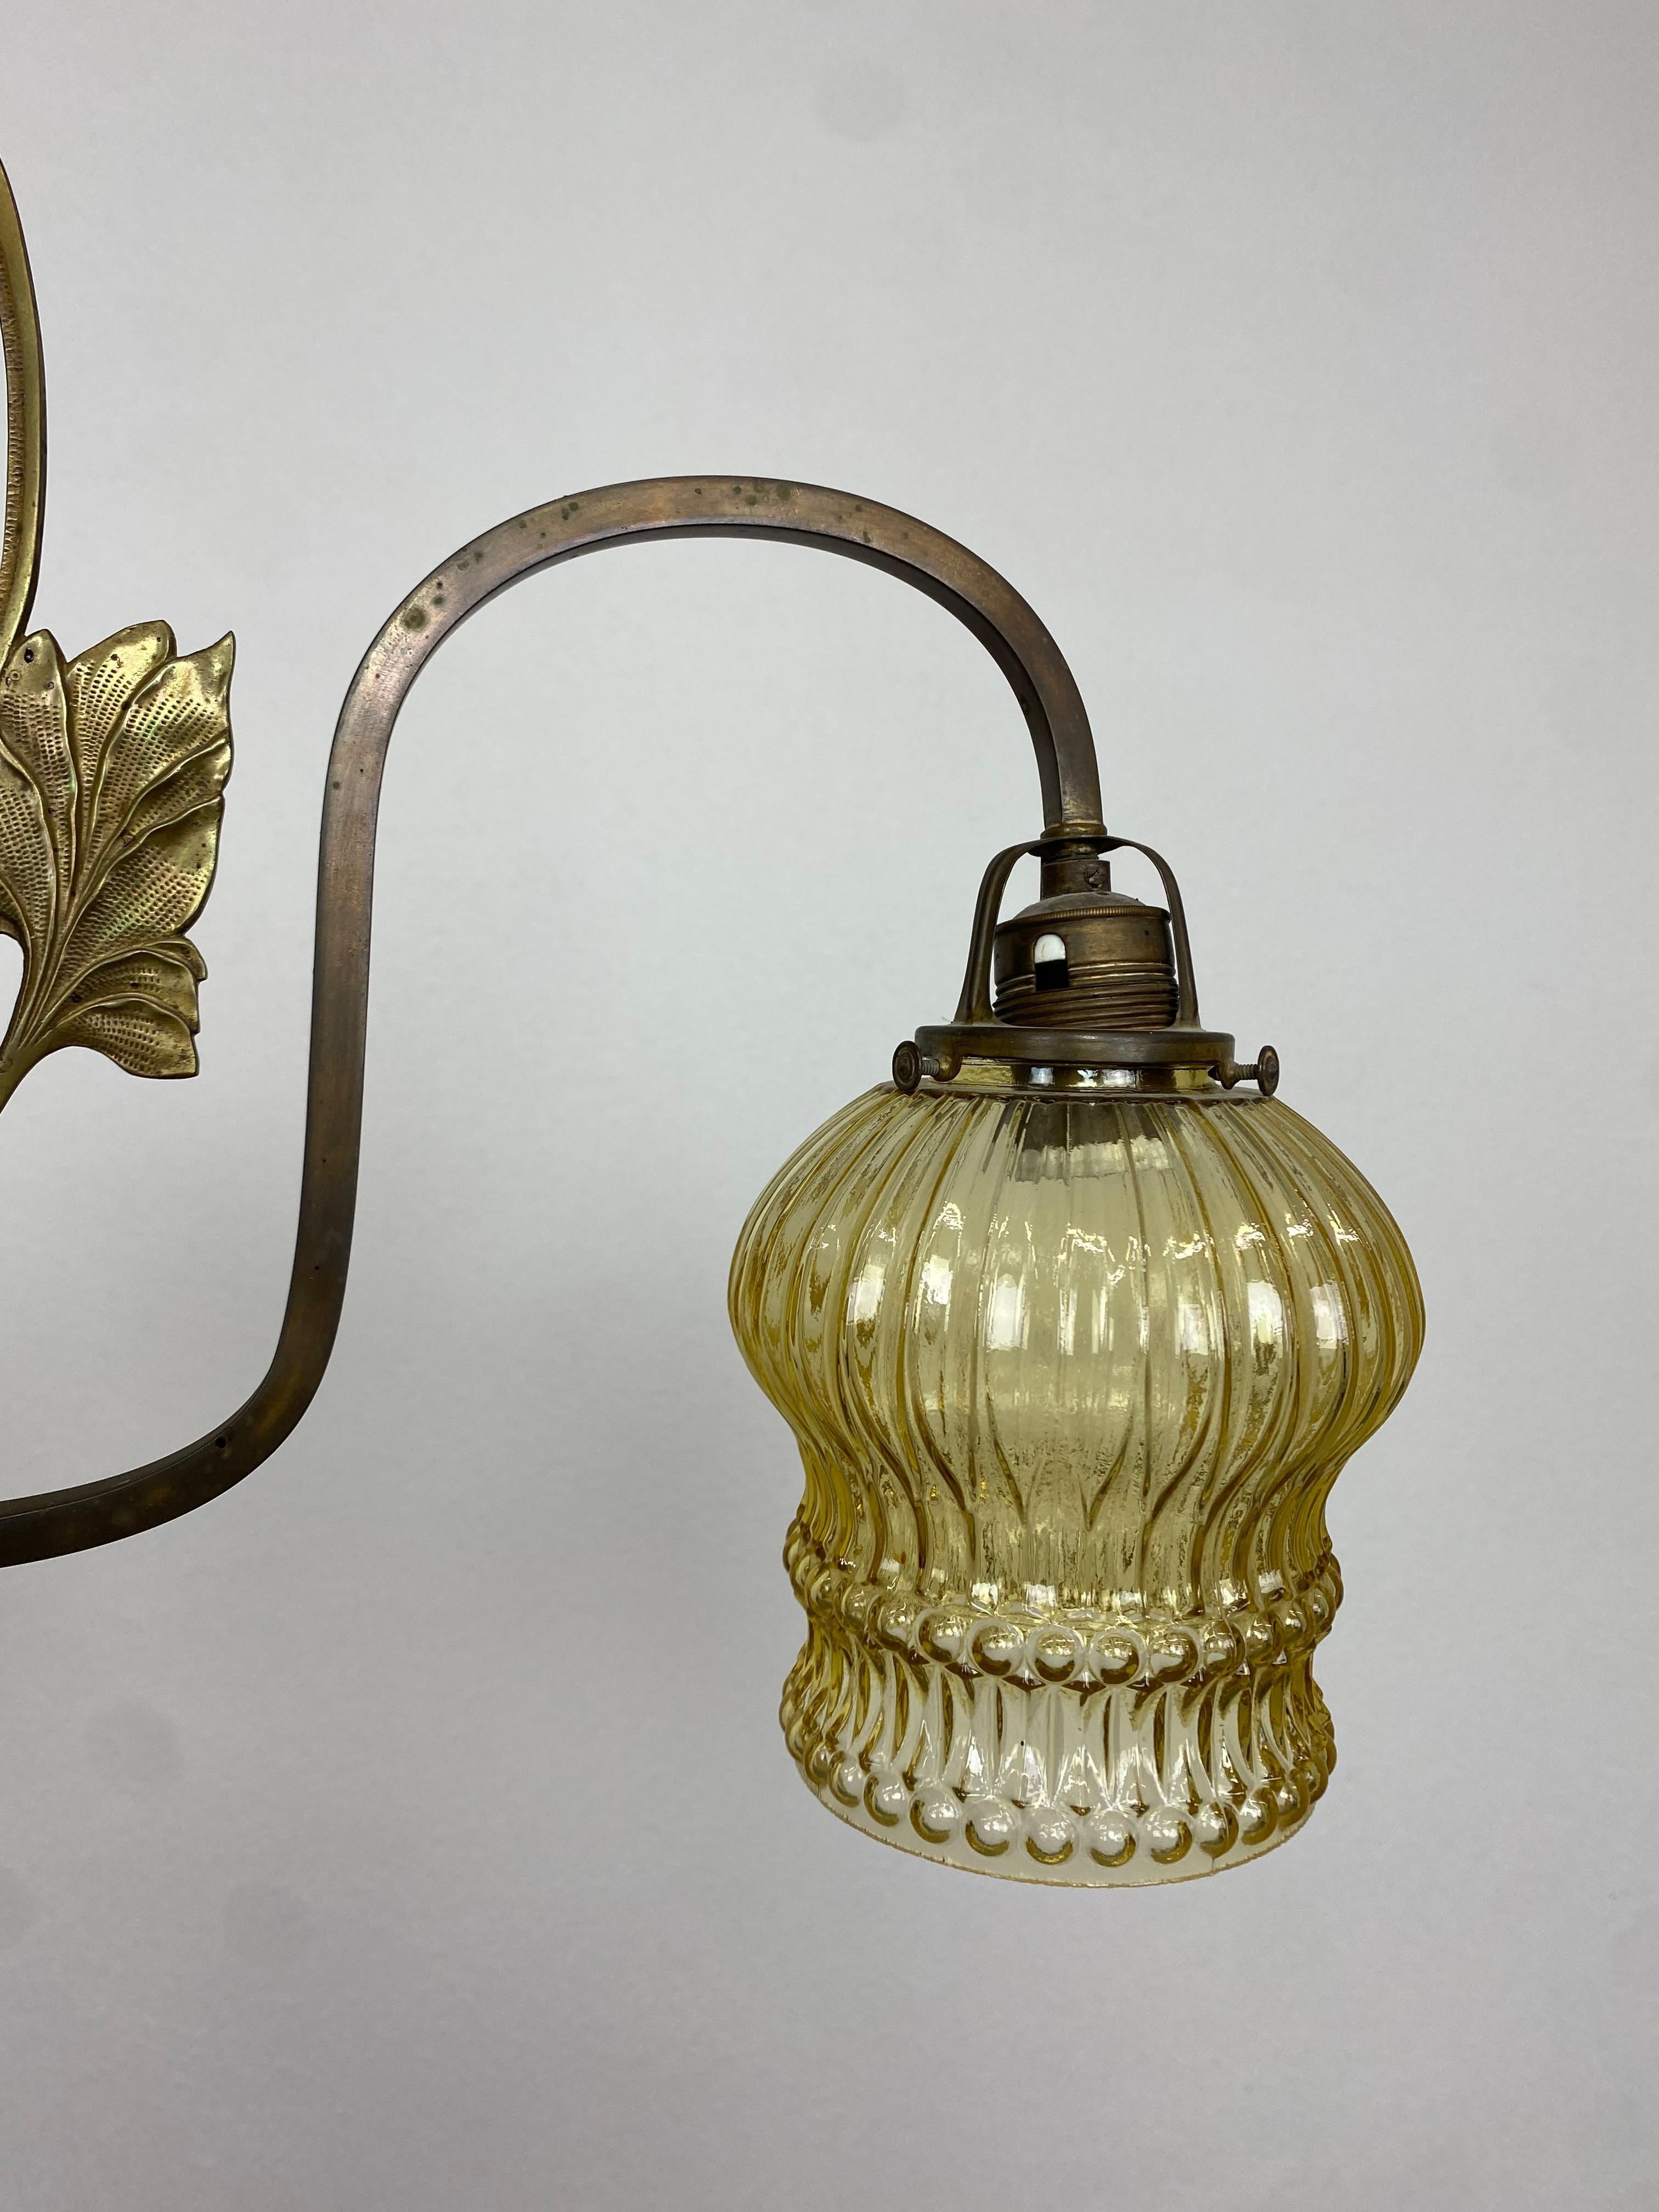 Jugendstil Hanging Lamp In Good Condition For Sale In Banská Štiavnica, SK